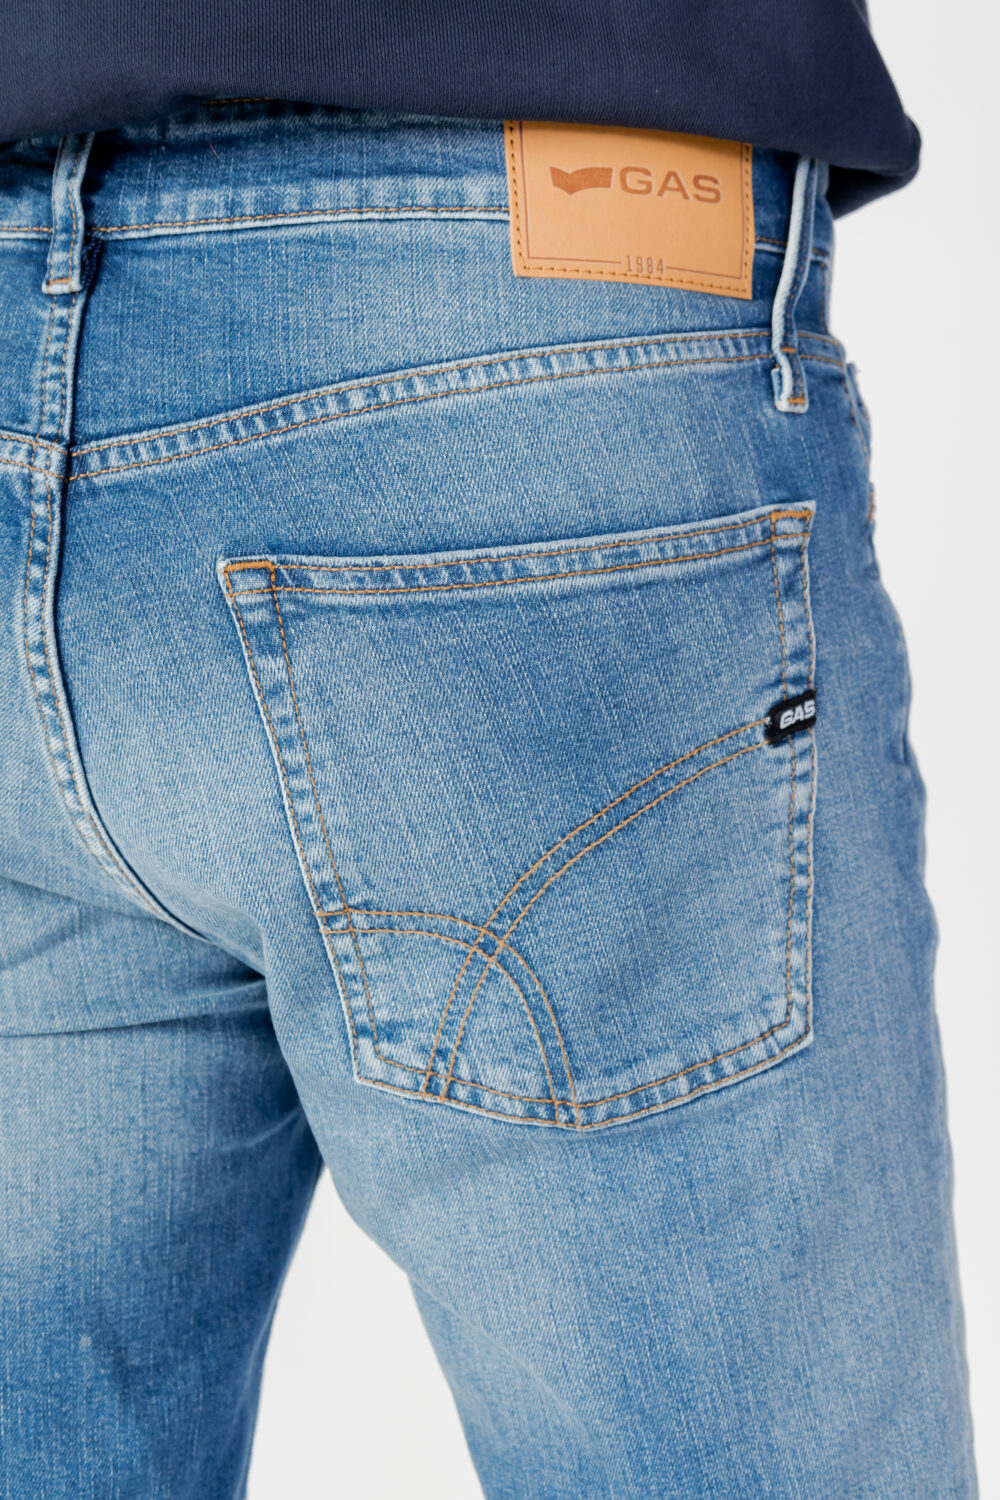 Jeans GAS albert simple rev Denim - Foto 4